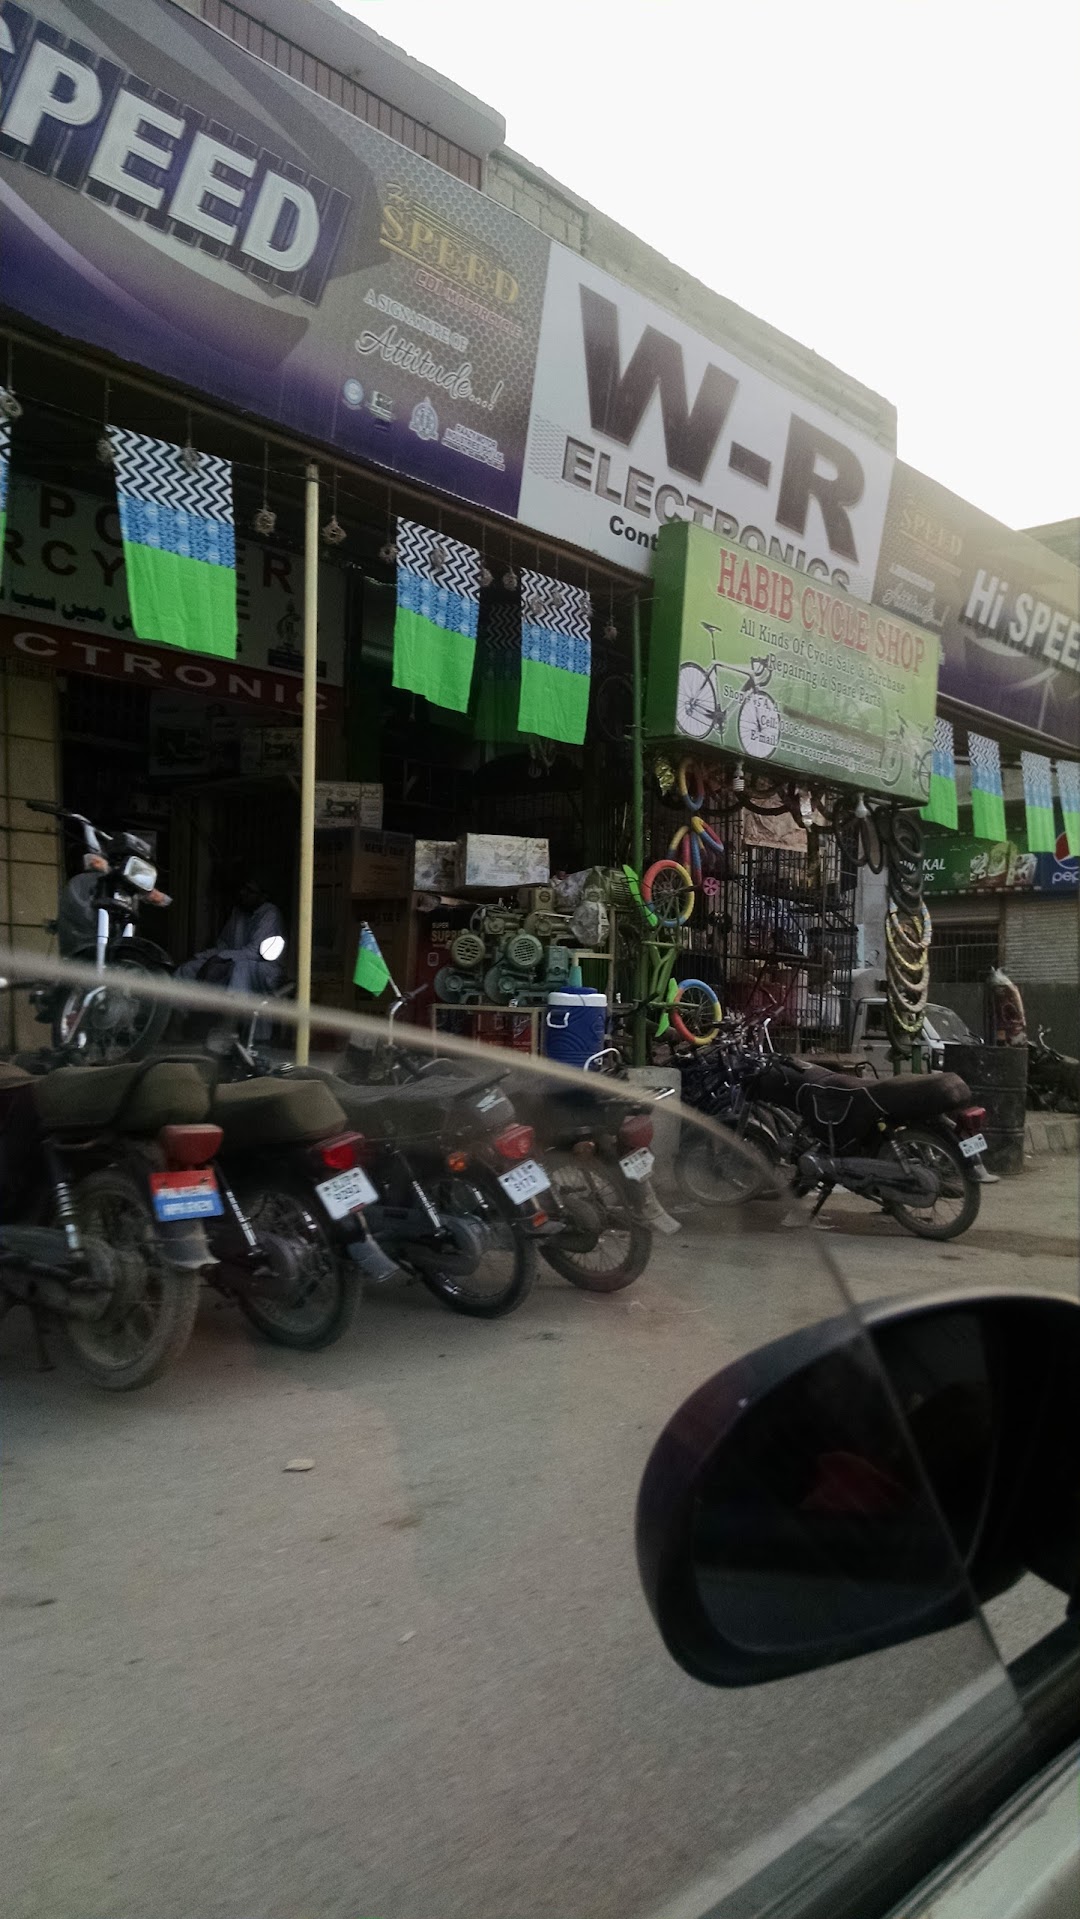 Habib Bicycle Shop